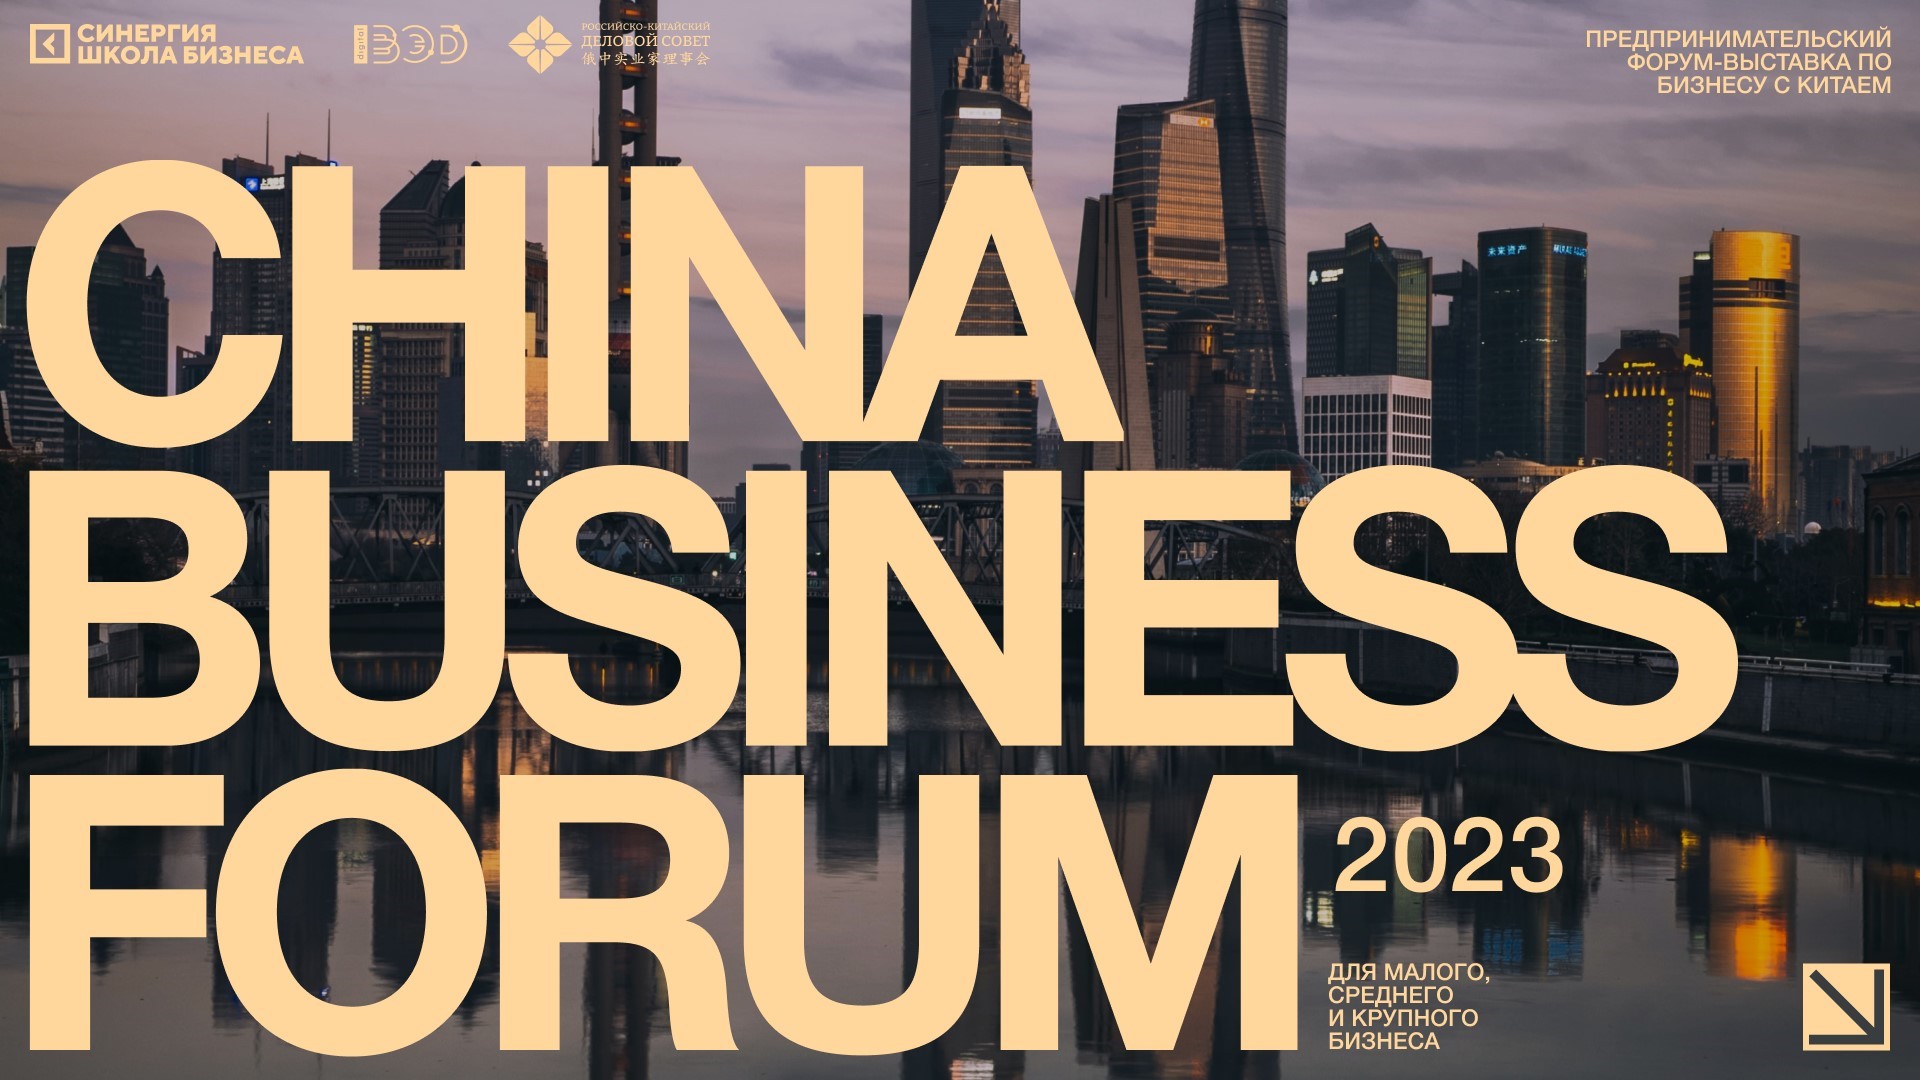 China Business Forum 2023: Новые Горизонты Российско-Китайского Бизнеса